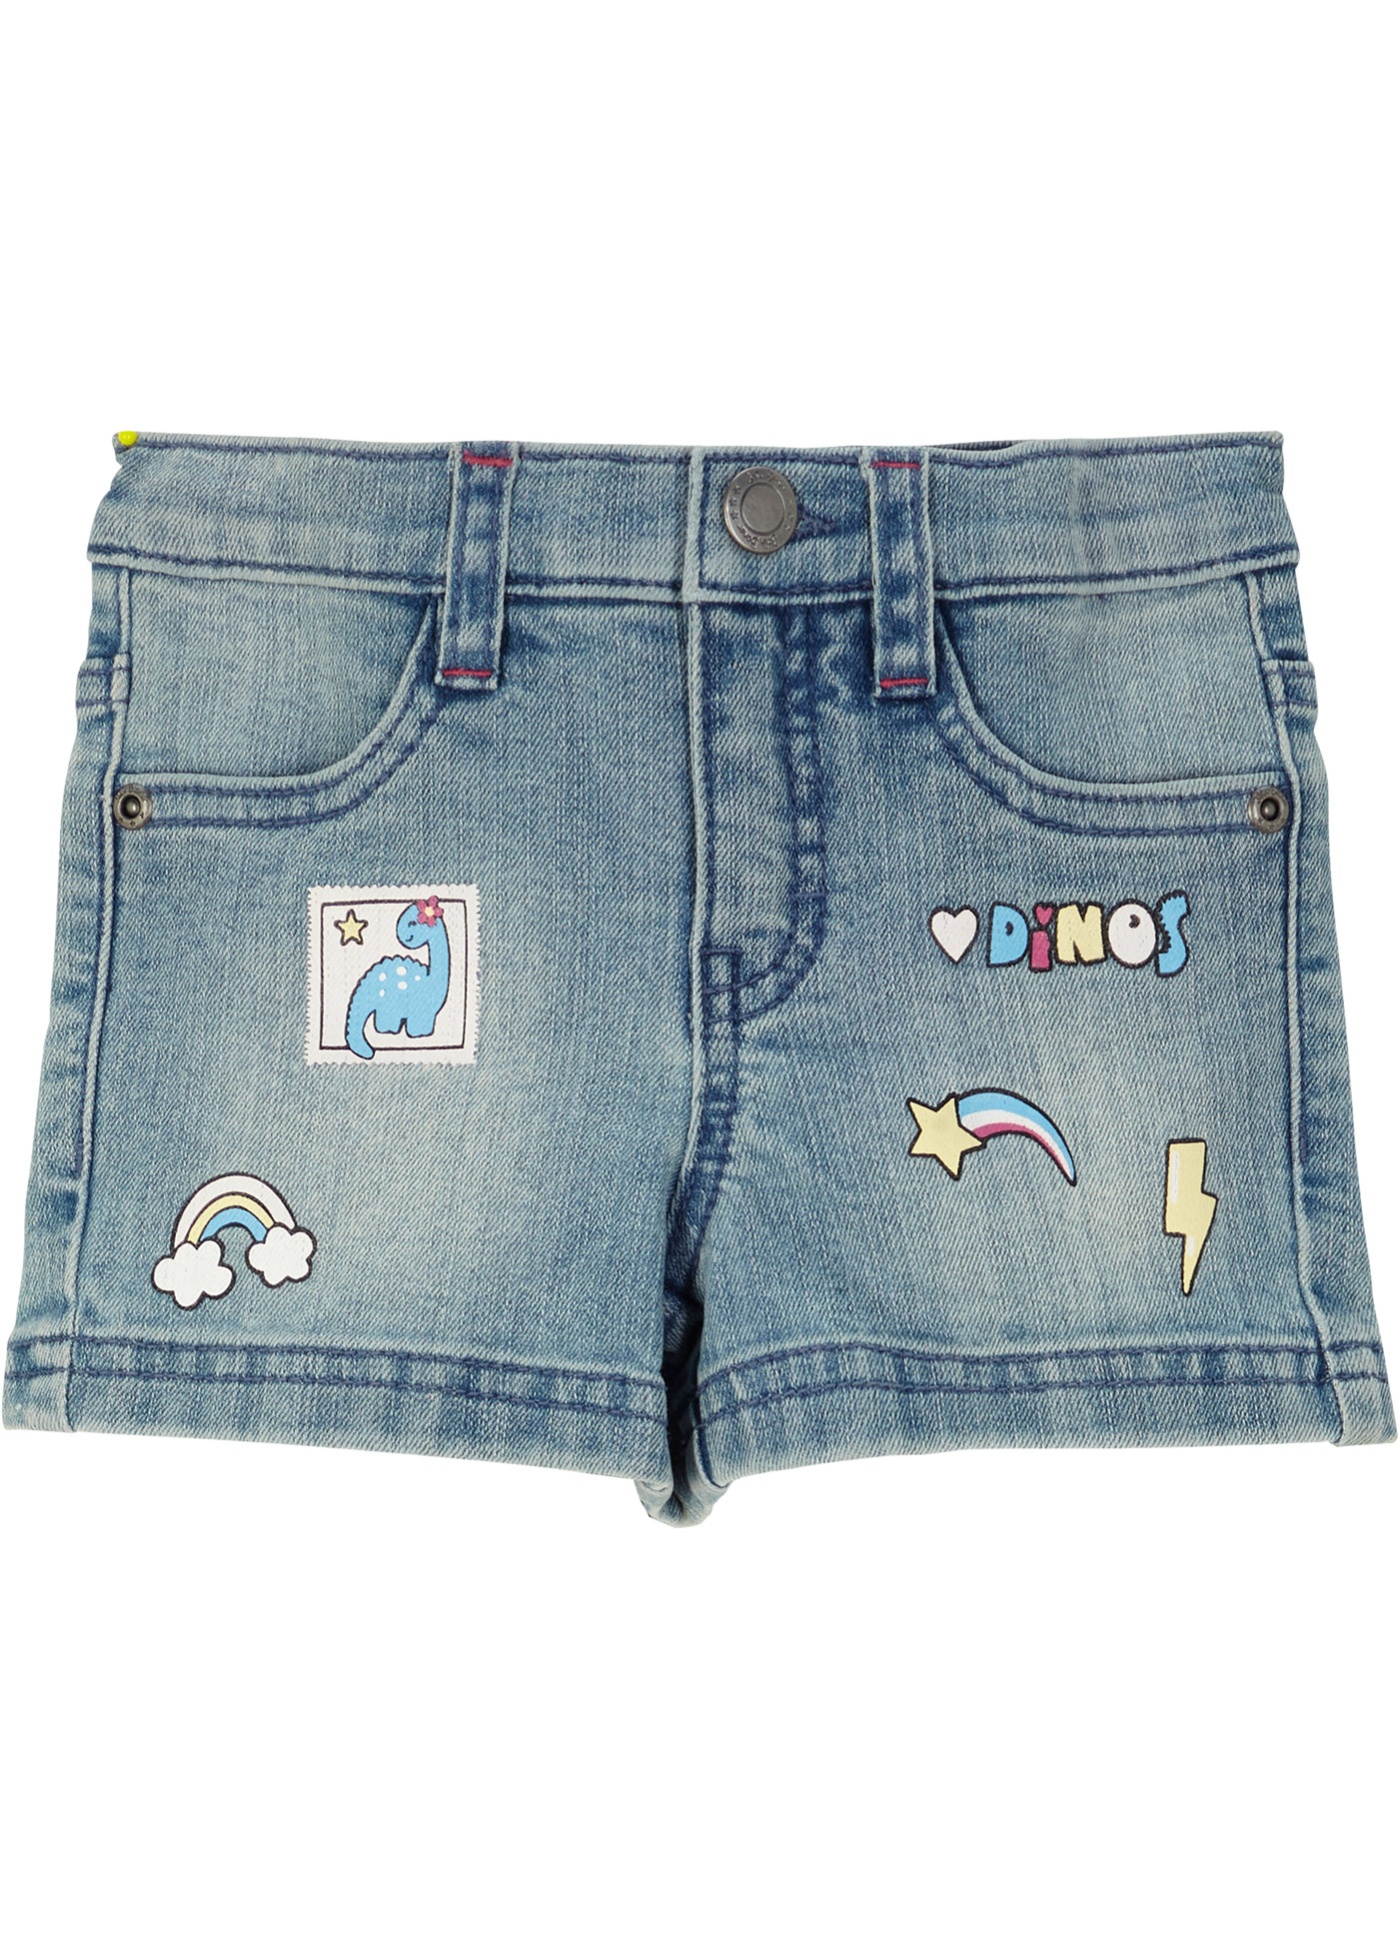 Dievčenské džínsové šortky s potlačou jednorožca